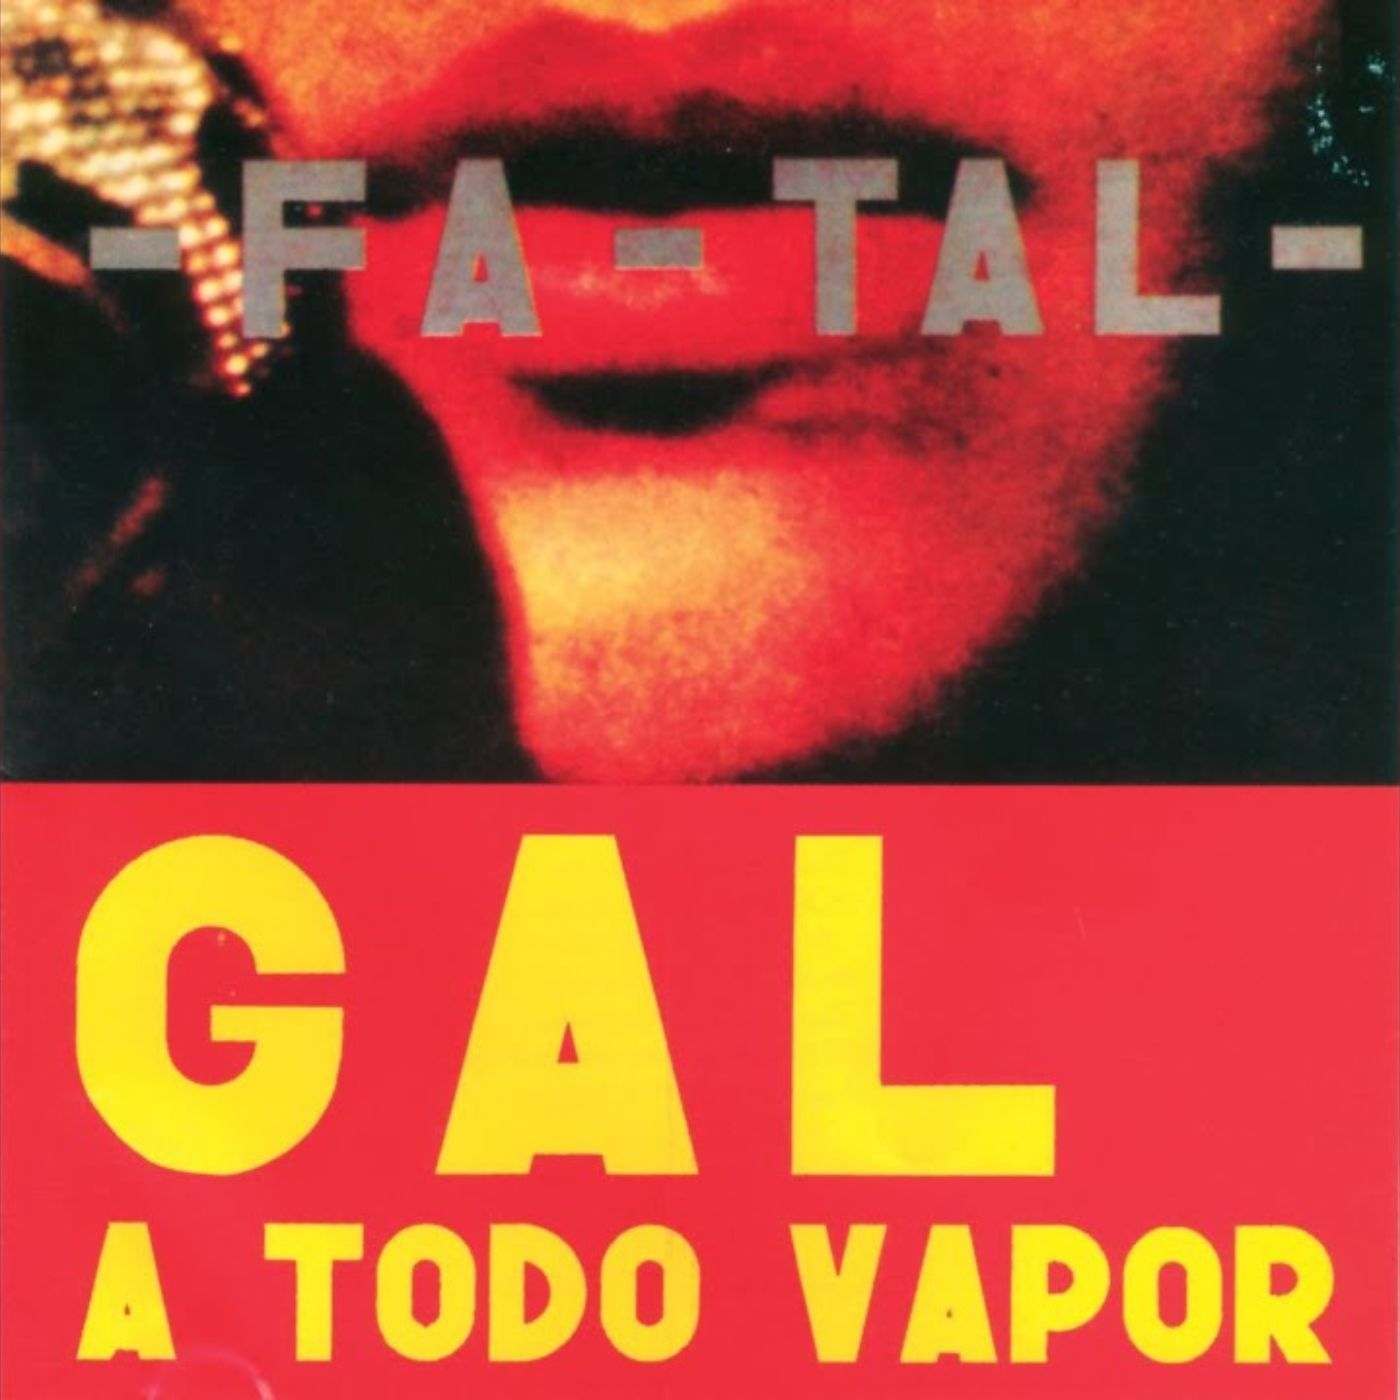 Especial Gal Costa #5 - Gal a Todo Vapor (Fa-Tal)